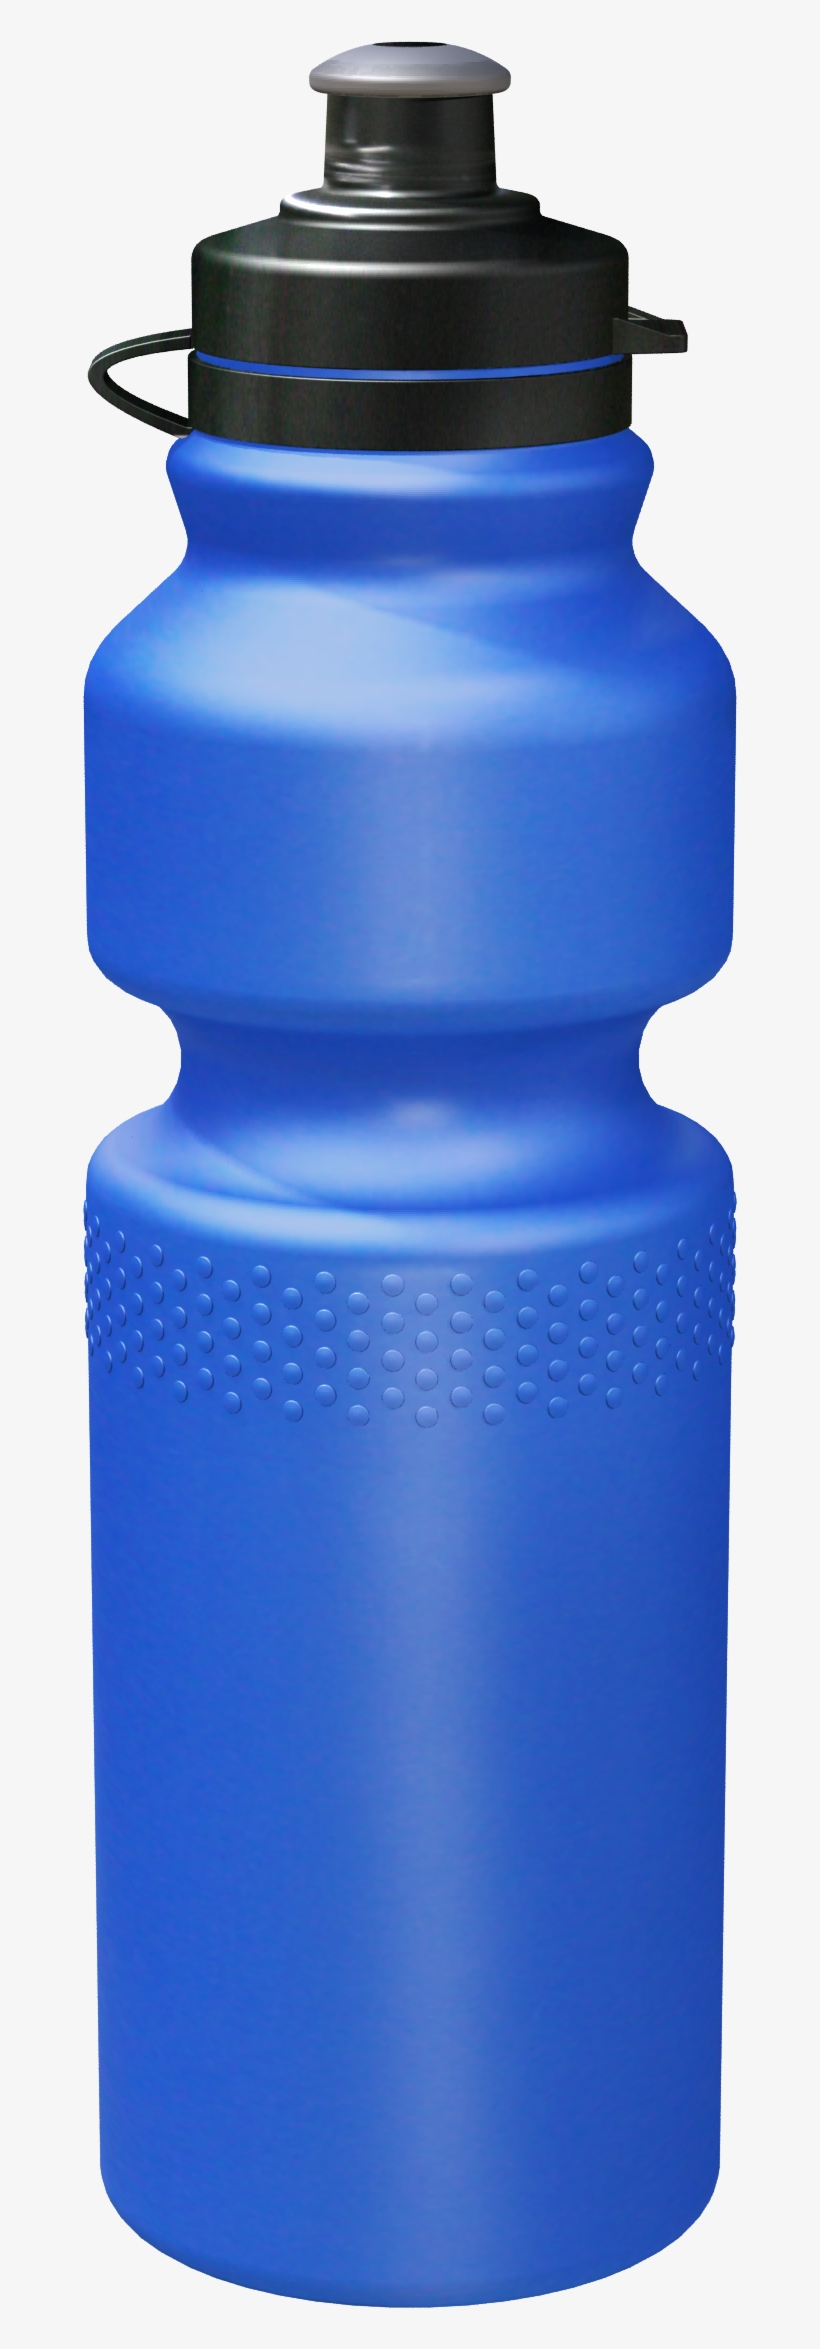 Budget Water Bottle &ndash Branded - Water Bottle, transparent png #2954315